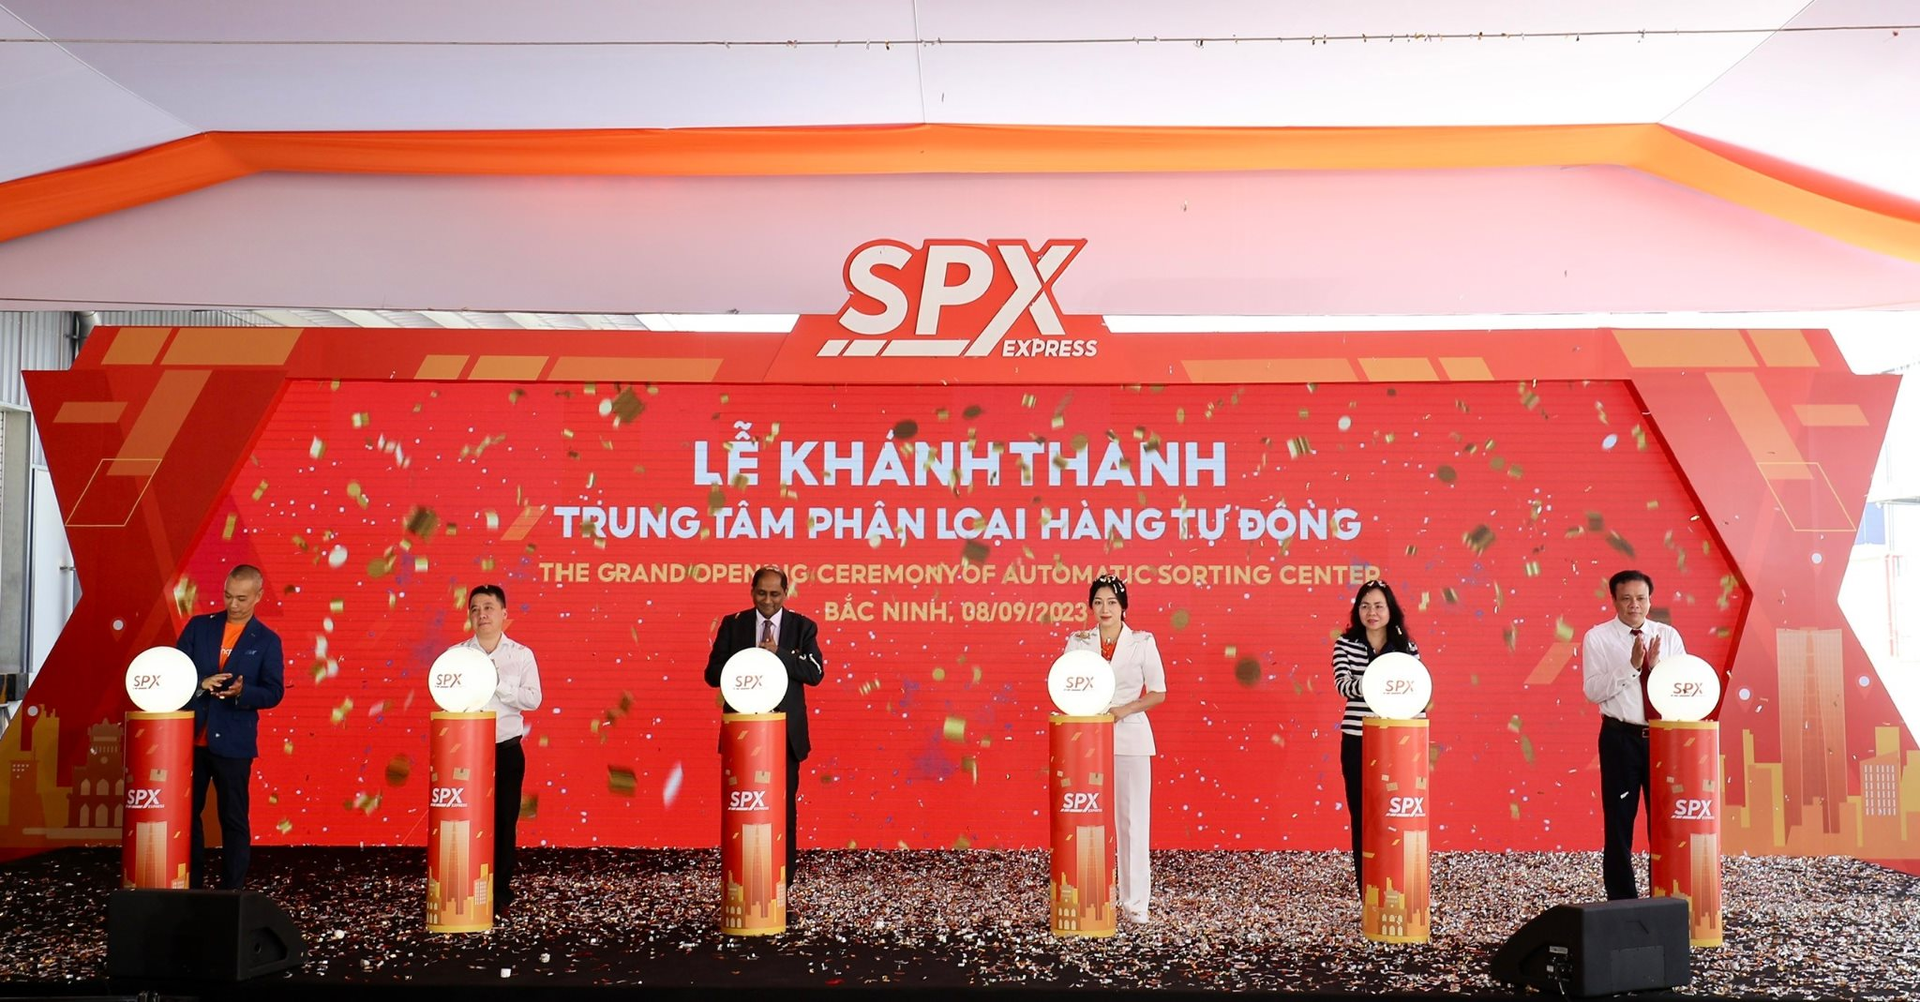 SPX khánh thành Trung tâm phân loại hàng hóa tự động tại Bắc Ninh, khả năng xử lý lên đến 2,5 triệu đơn hàng/ngày